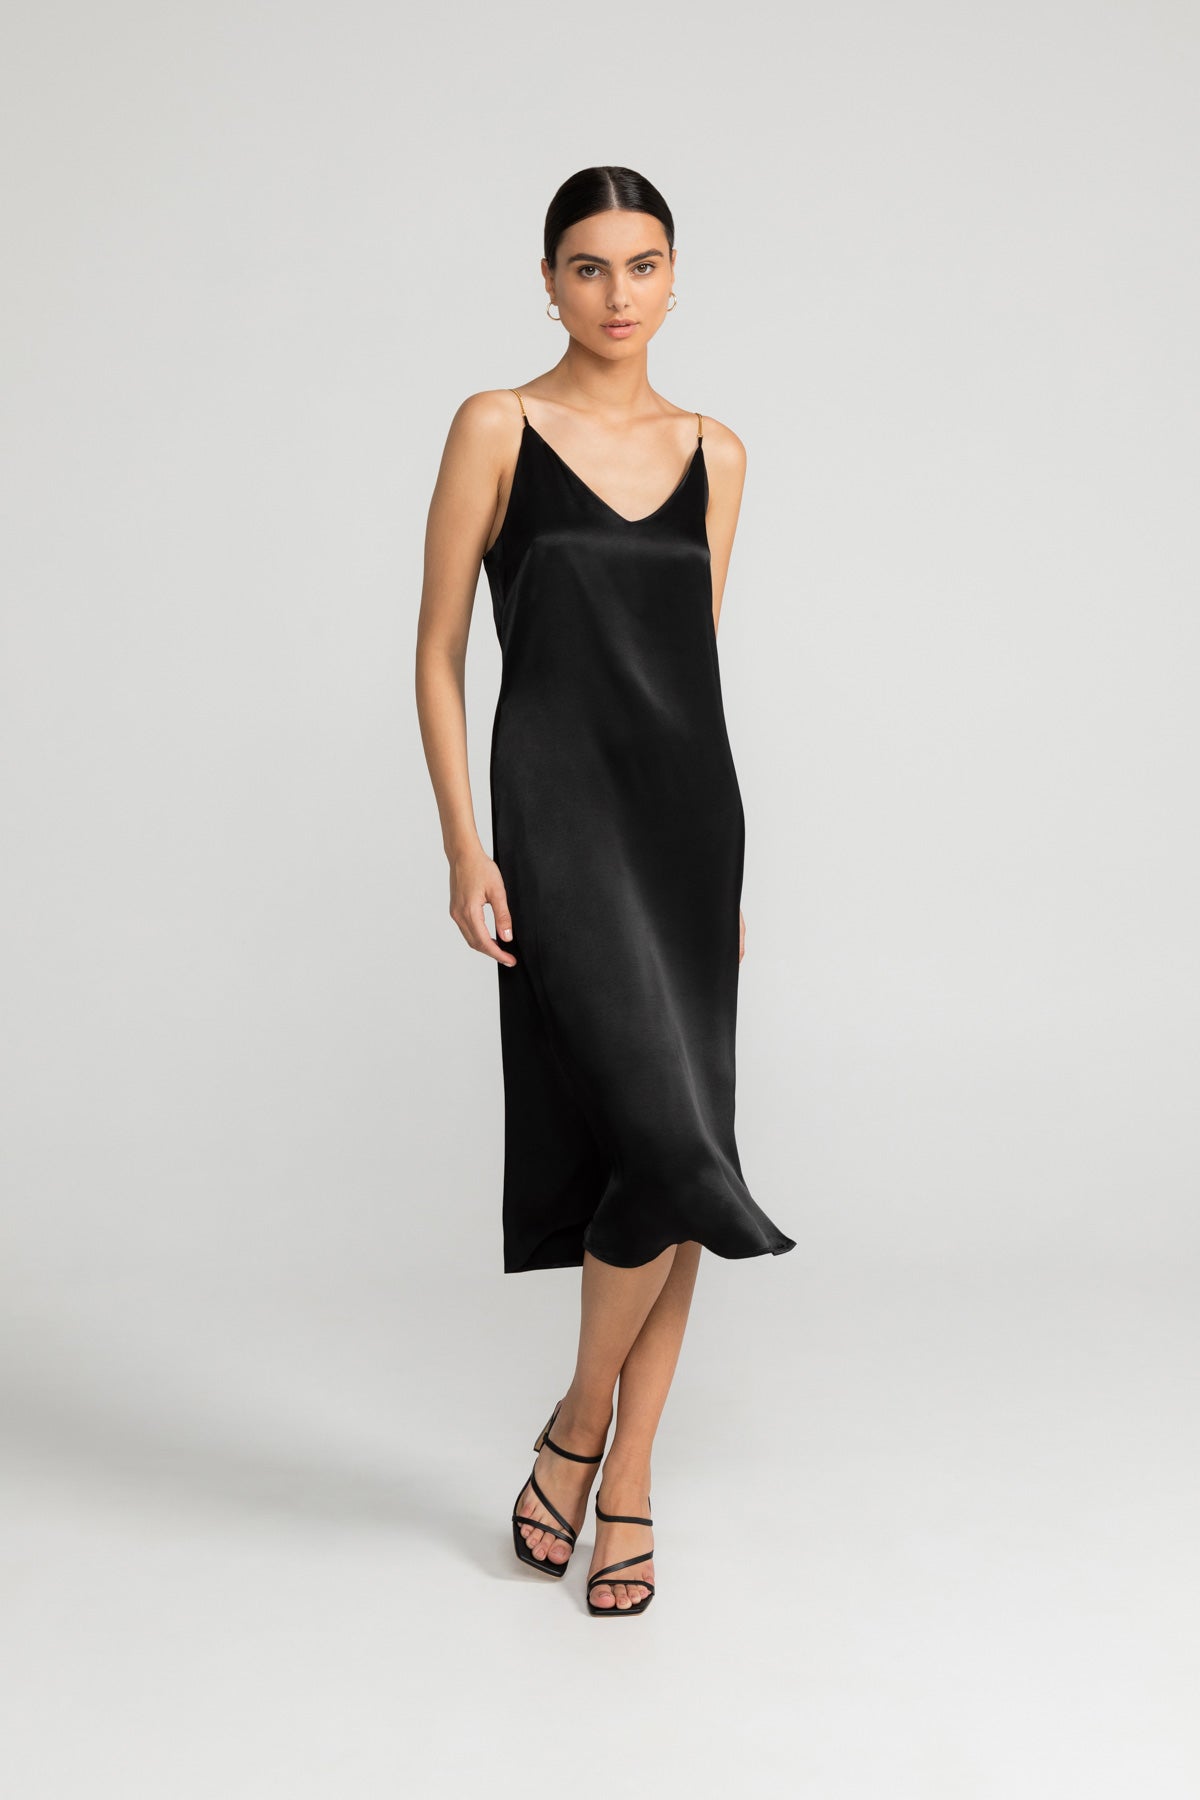 Kleid ELANIE in schwarz von LOVJOI aus nachhaltiger ENKA® Viskose und